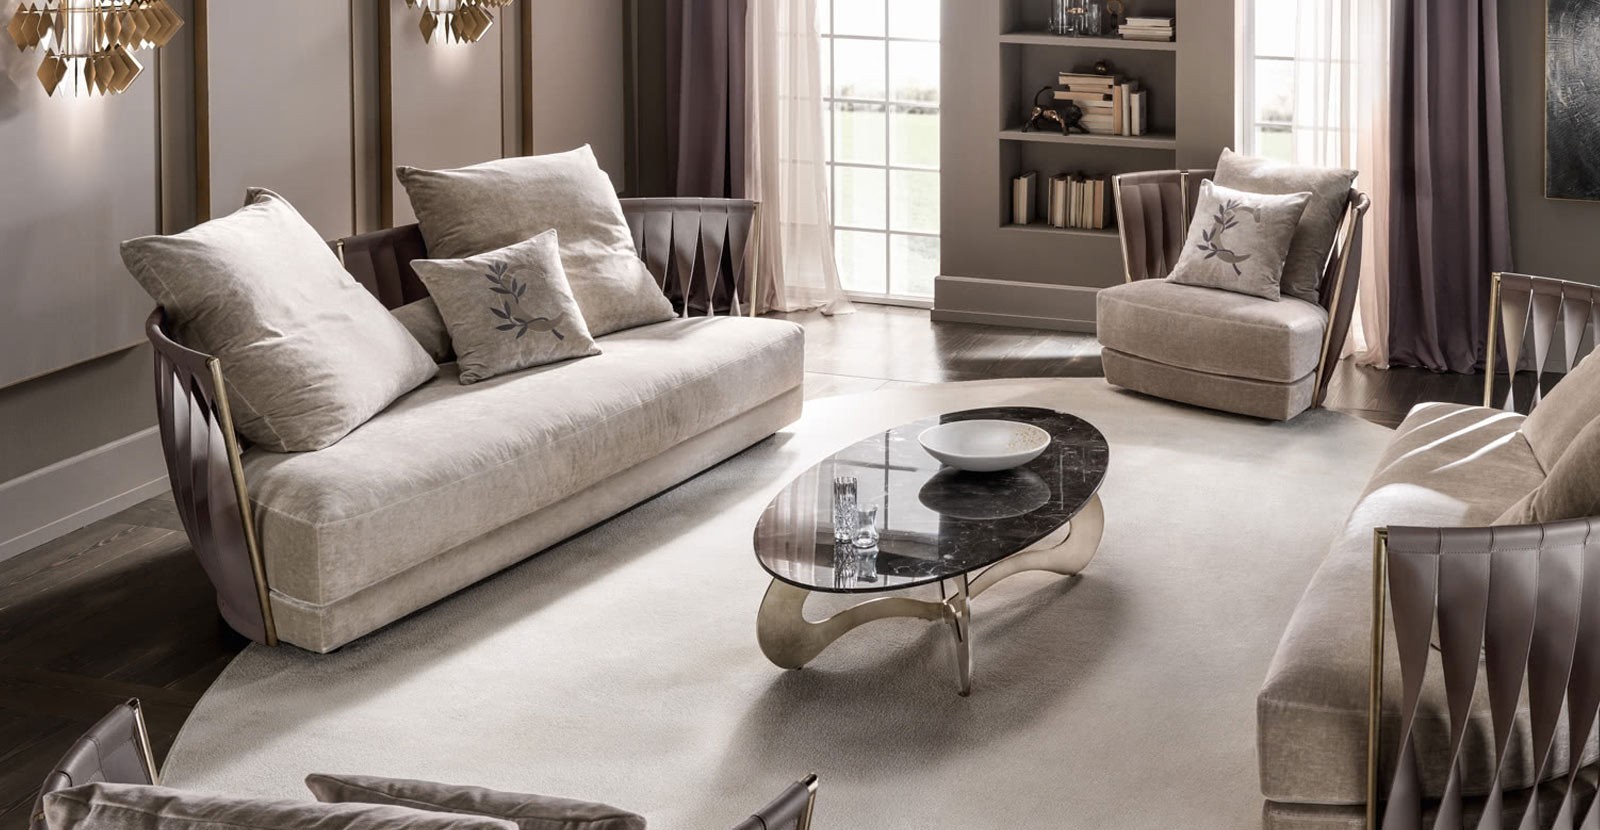 Buy Cantori Furniture on Mobilificio Marchese: italian design